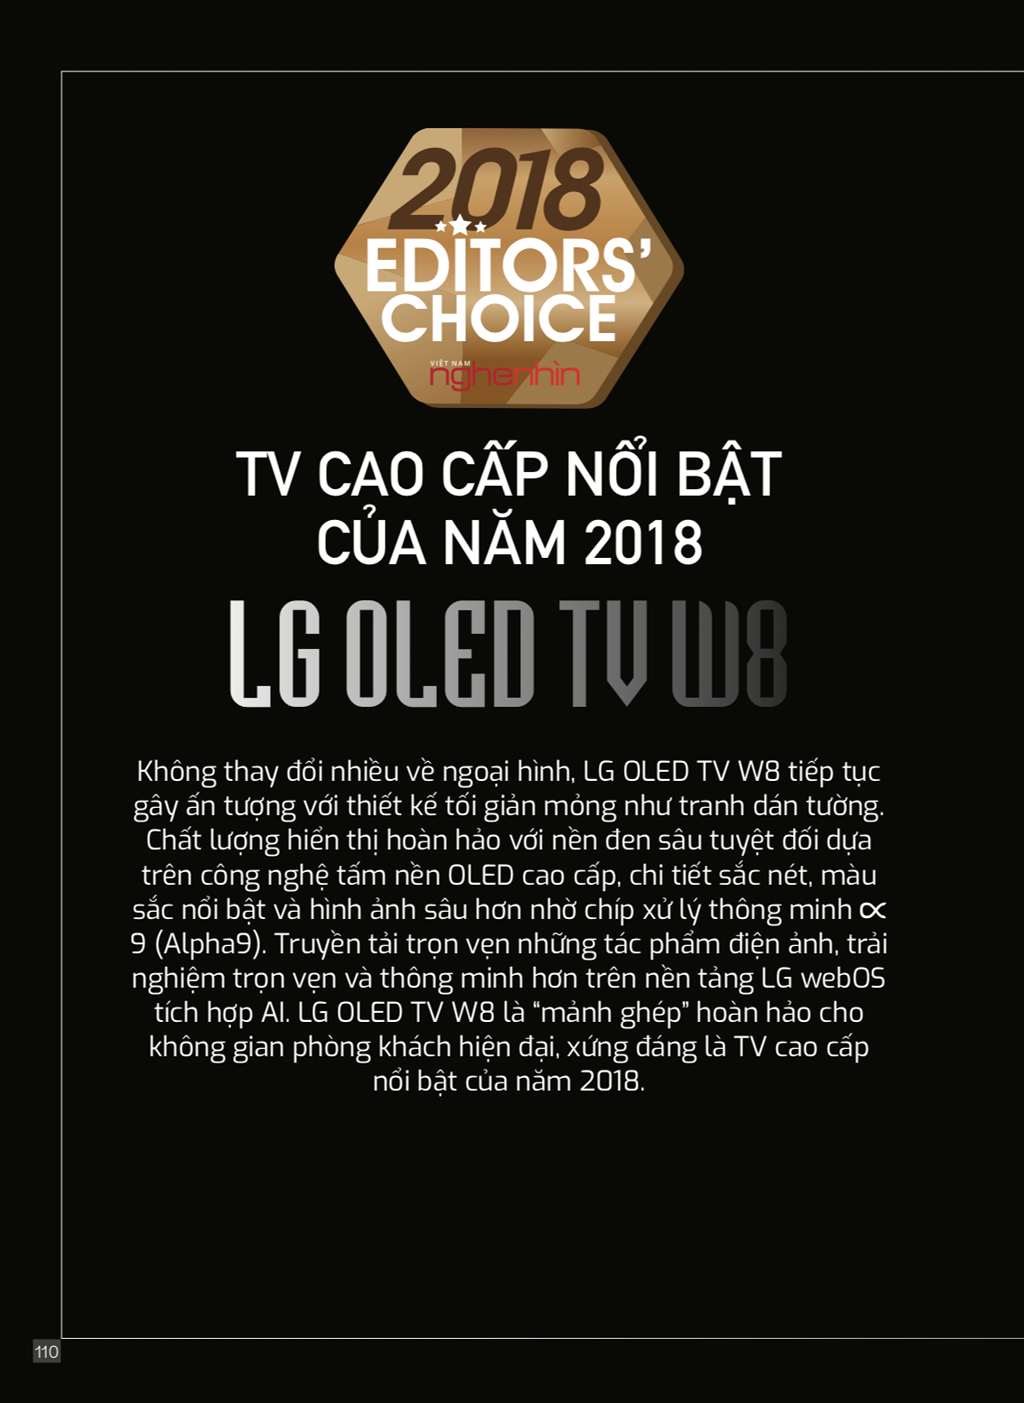 Editors Choice 2018: LG OLED TV W8 - TV cao cấp nổi bật của năm 2018 ảnh 1